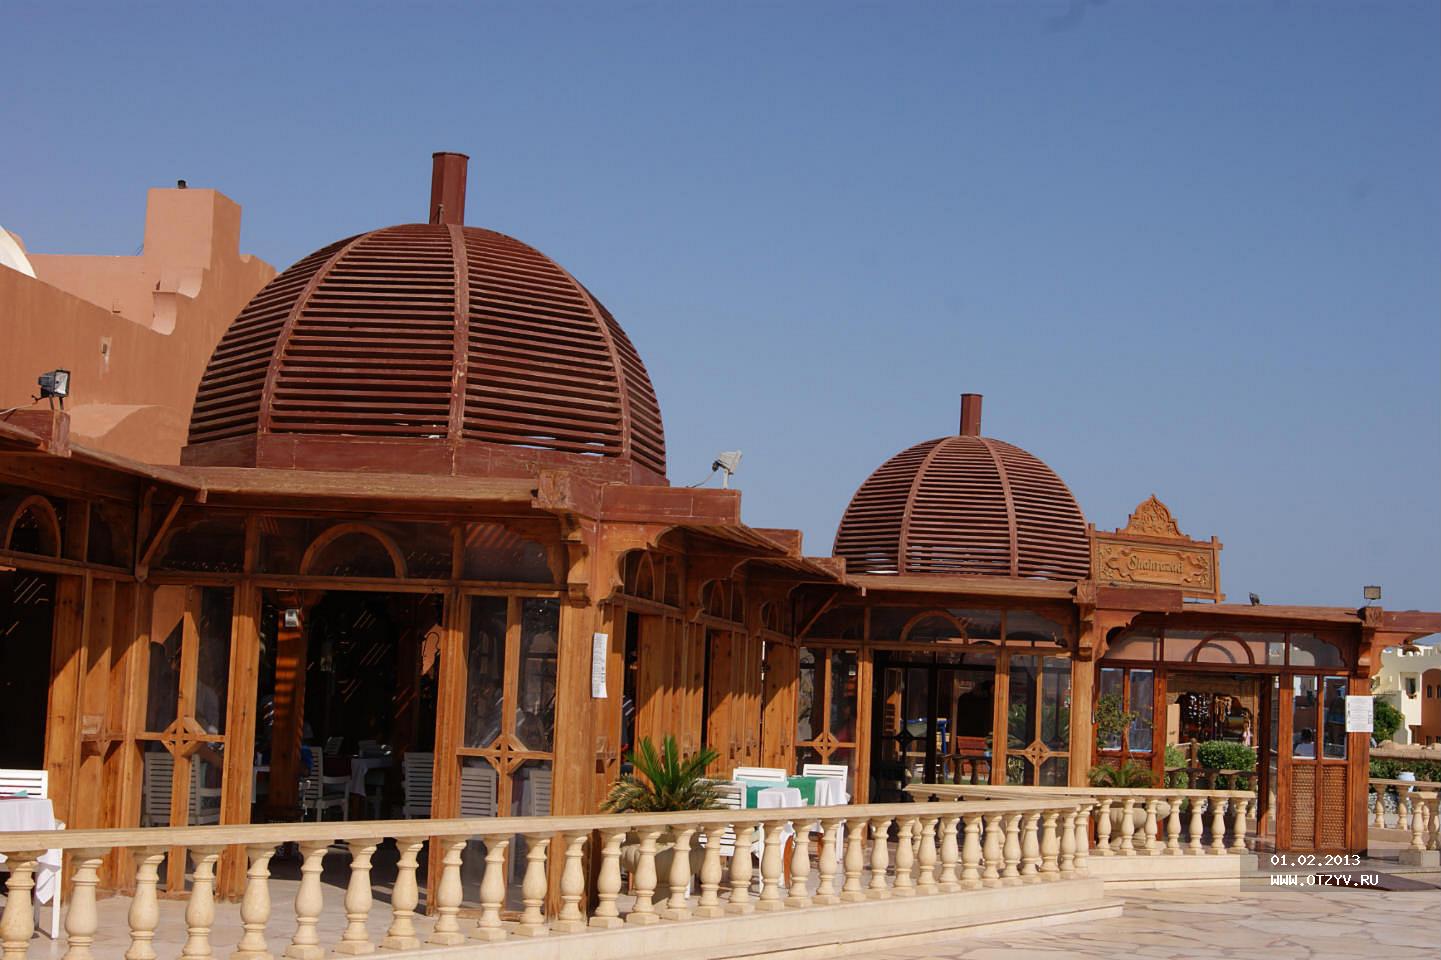 Отель санрайз макади египет